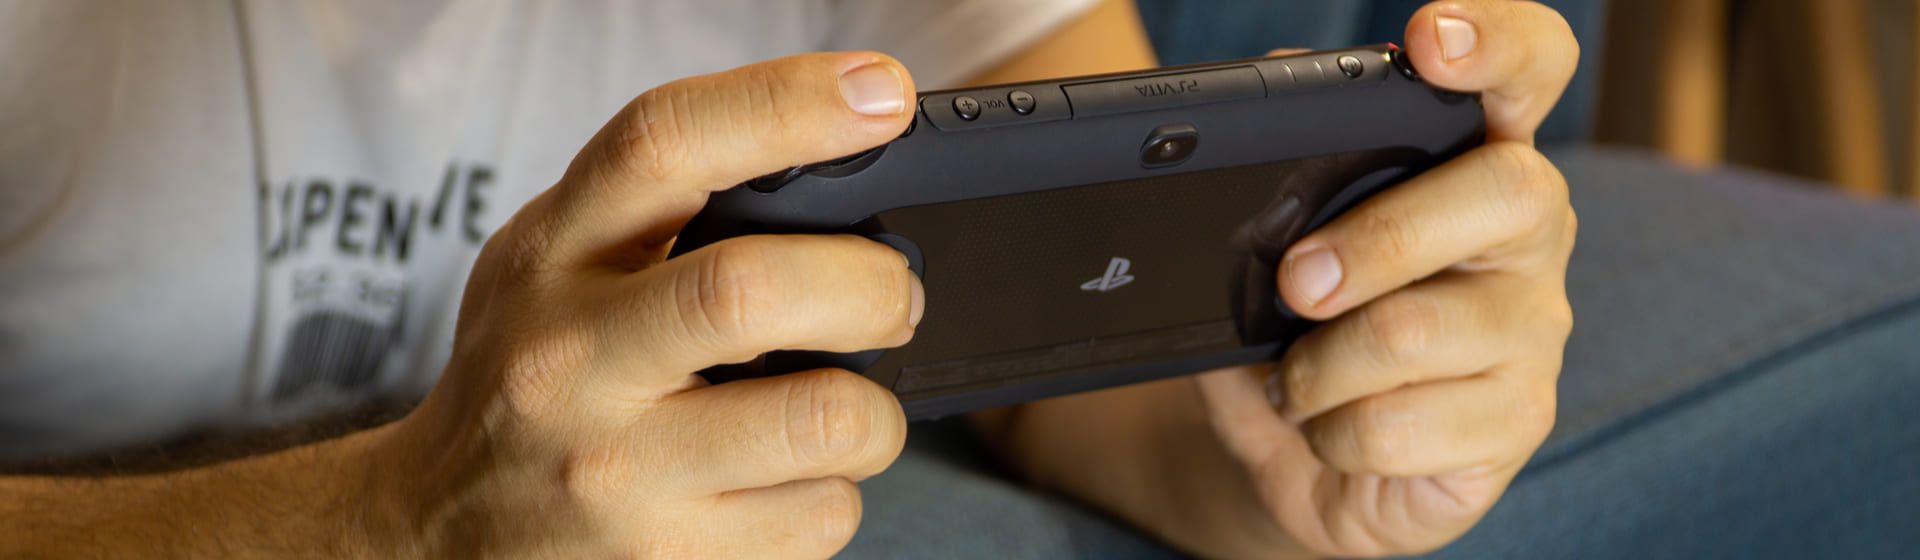 Top 10 melhores jogos de PSP para o PS Vita